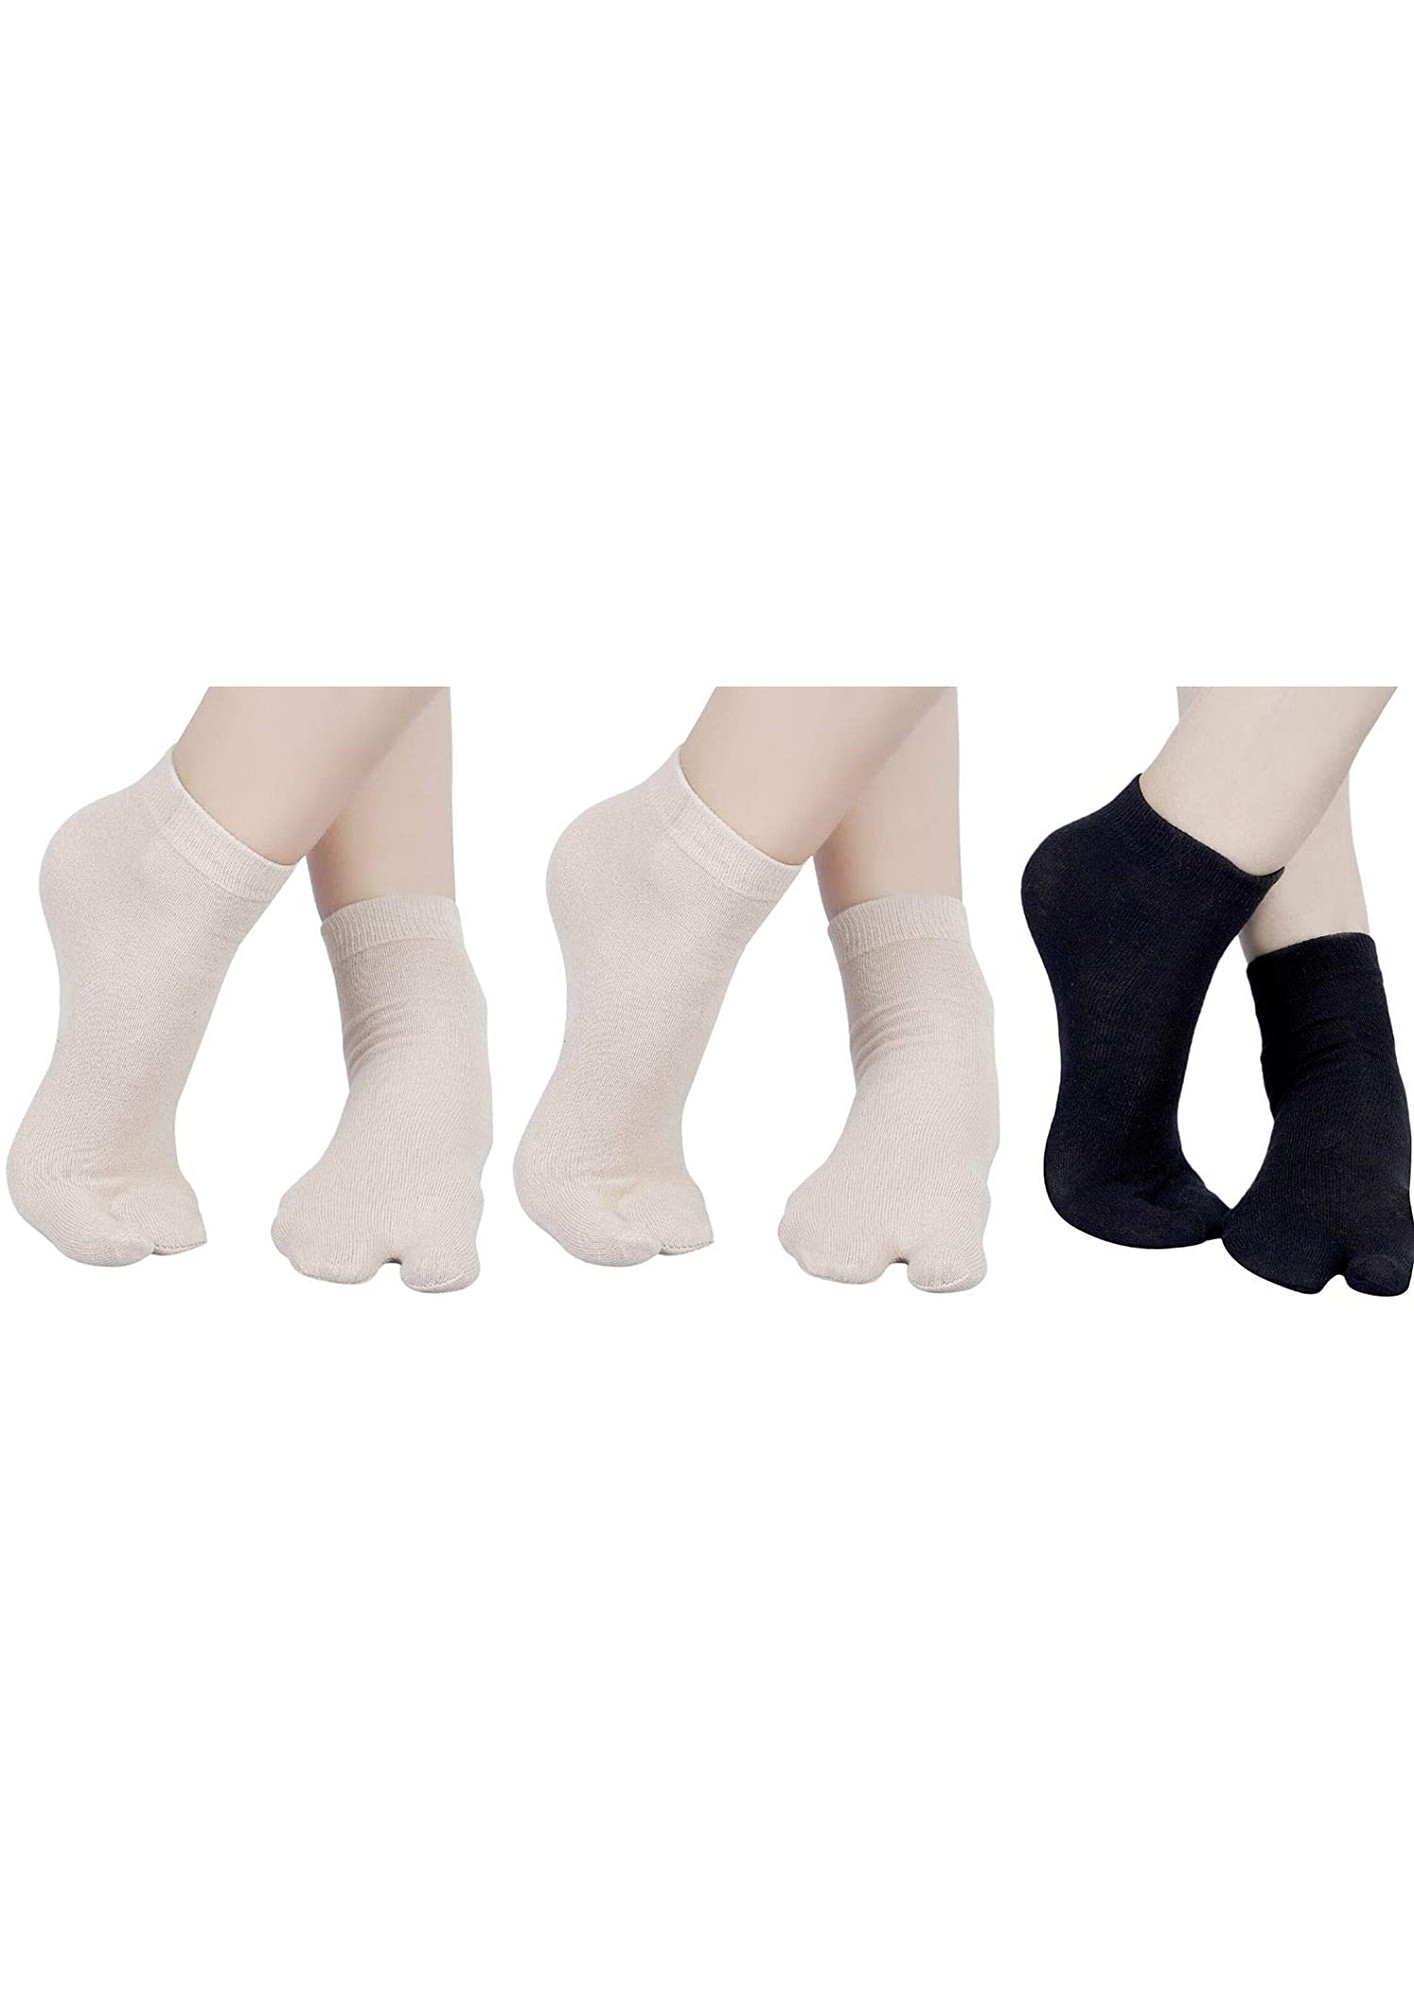 N2S NEXT2SKIN Cotton Thumb Tube Socks for Women Toe Socks for Ladies (Skin:Skin:Black)